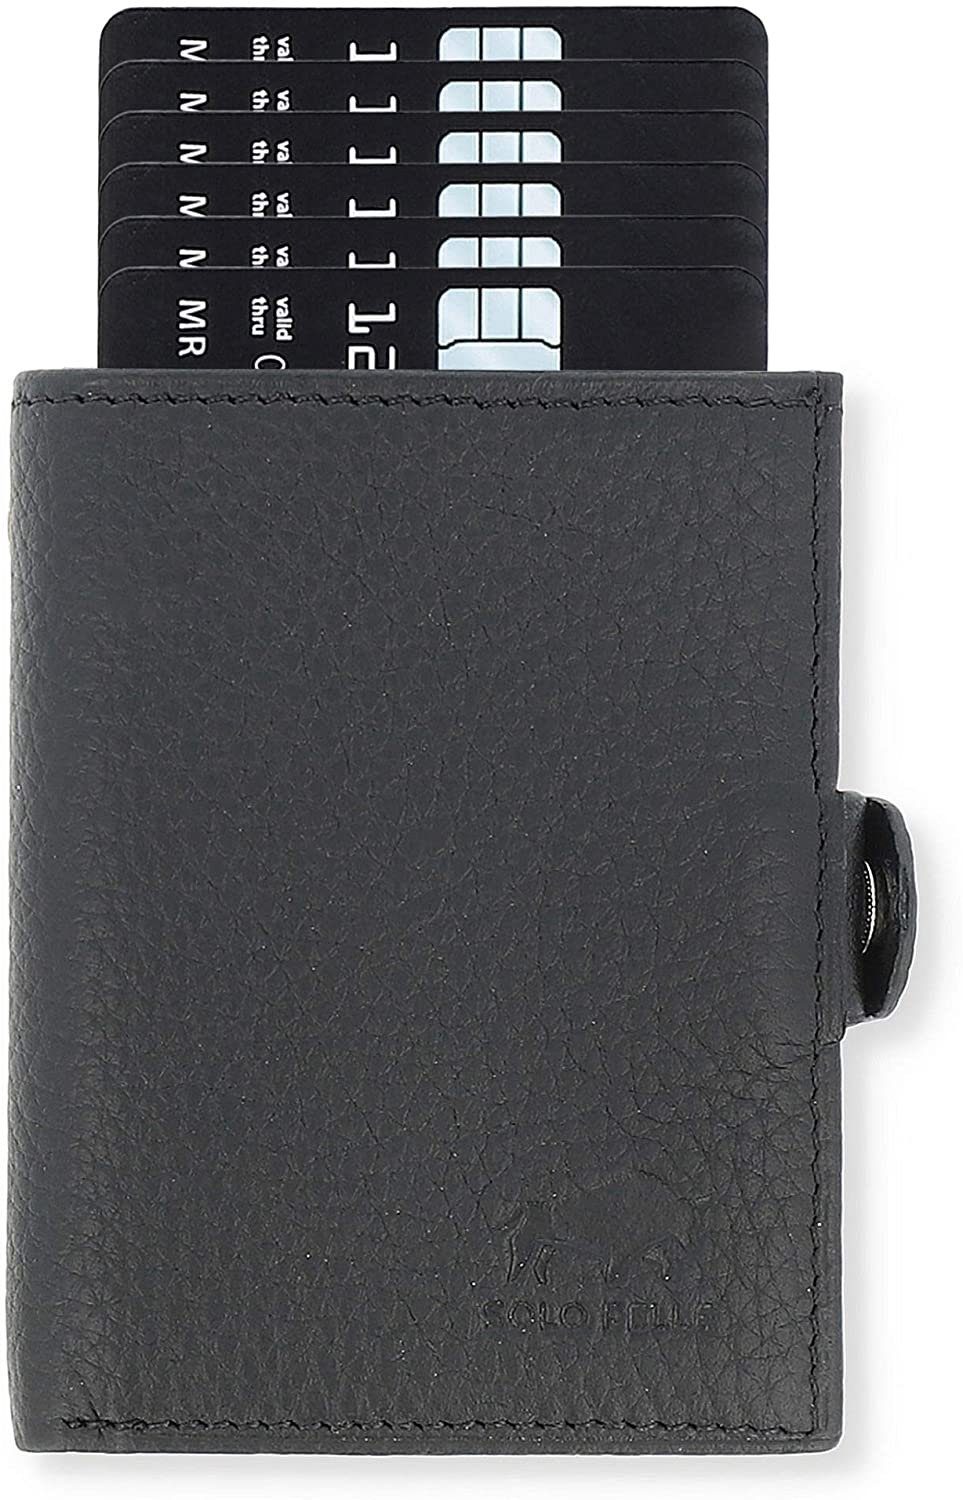 Solo Pelle Mini Geldbörse Slim Wallet mit Münzfach [12 Karten] Slimwallet Riva [RFID-Schutz], echt Leder, Made in Europe in elegantem Design mit RFID Schutz Schwarz